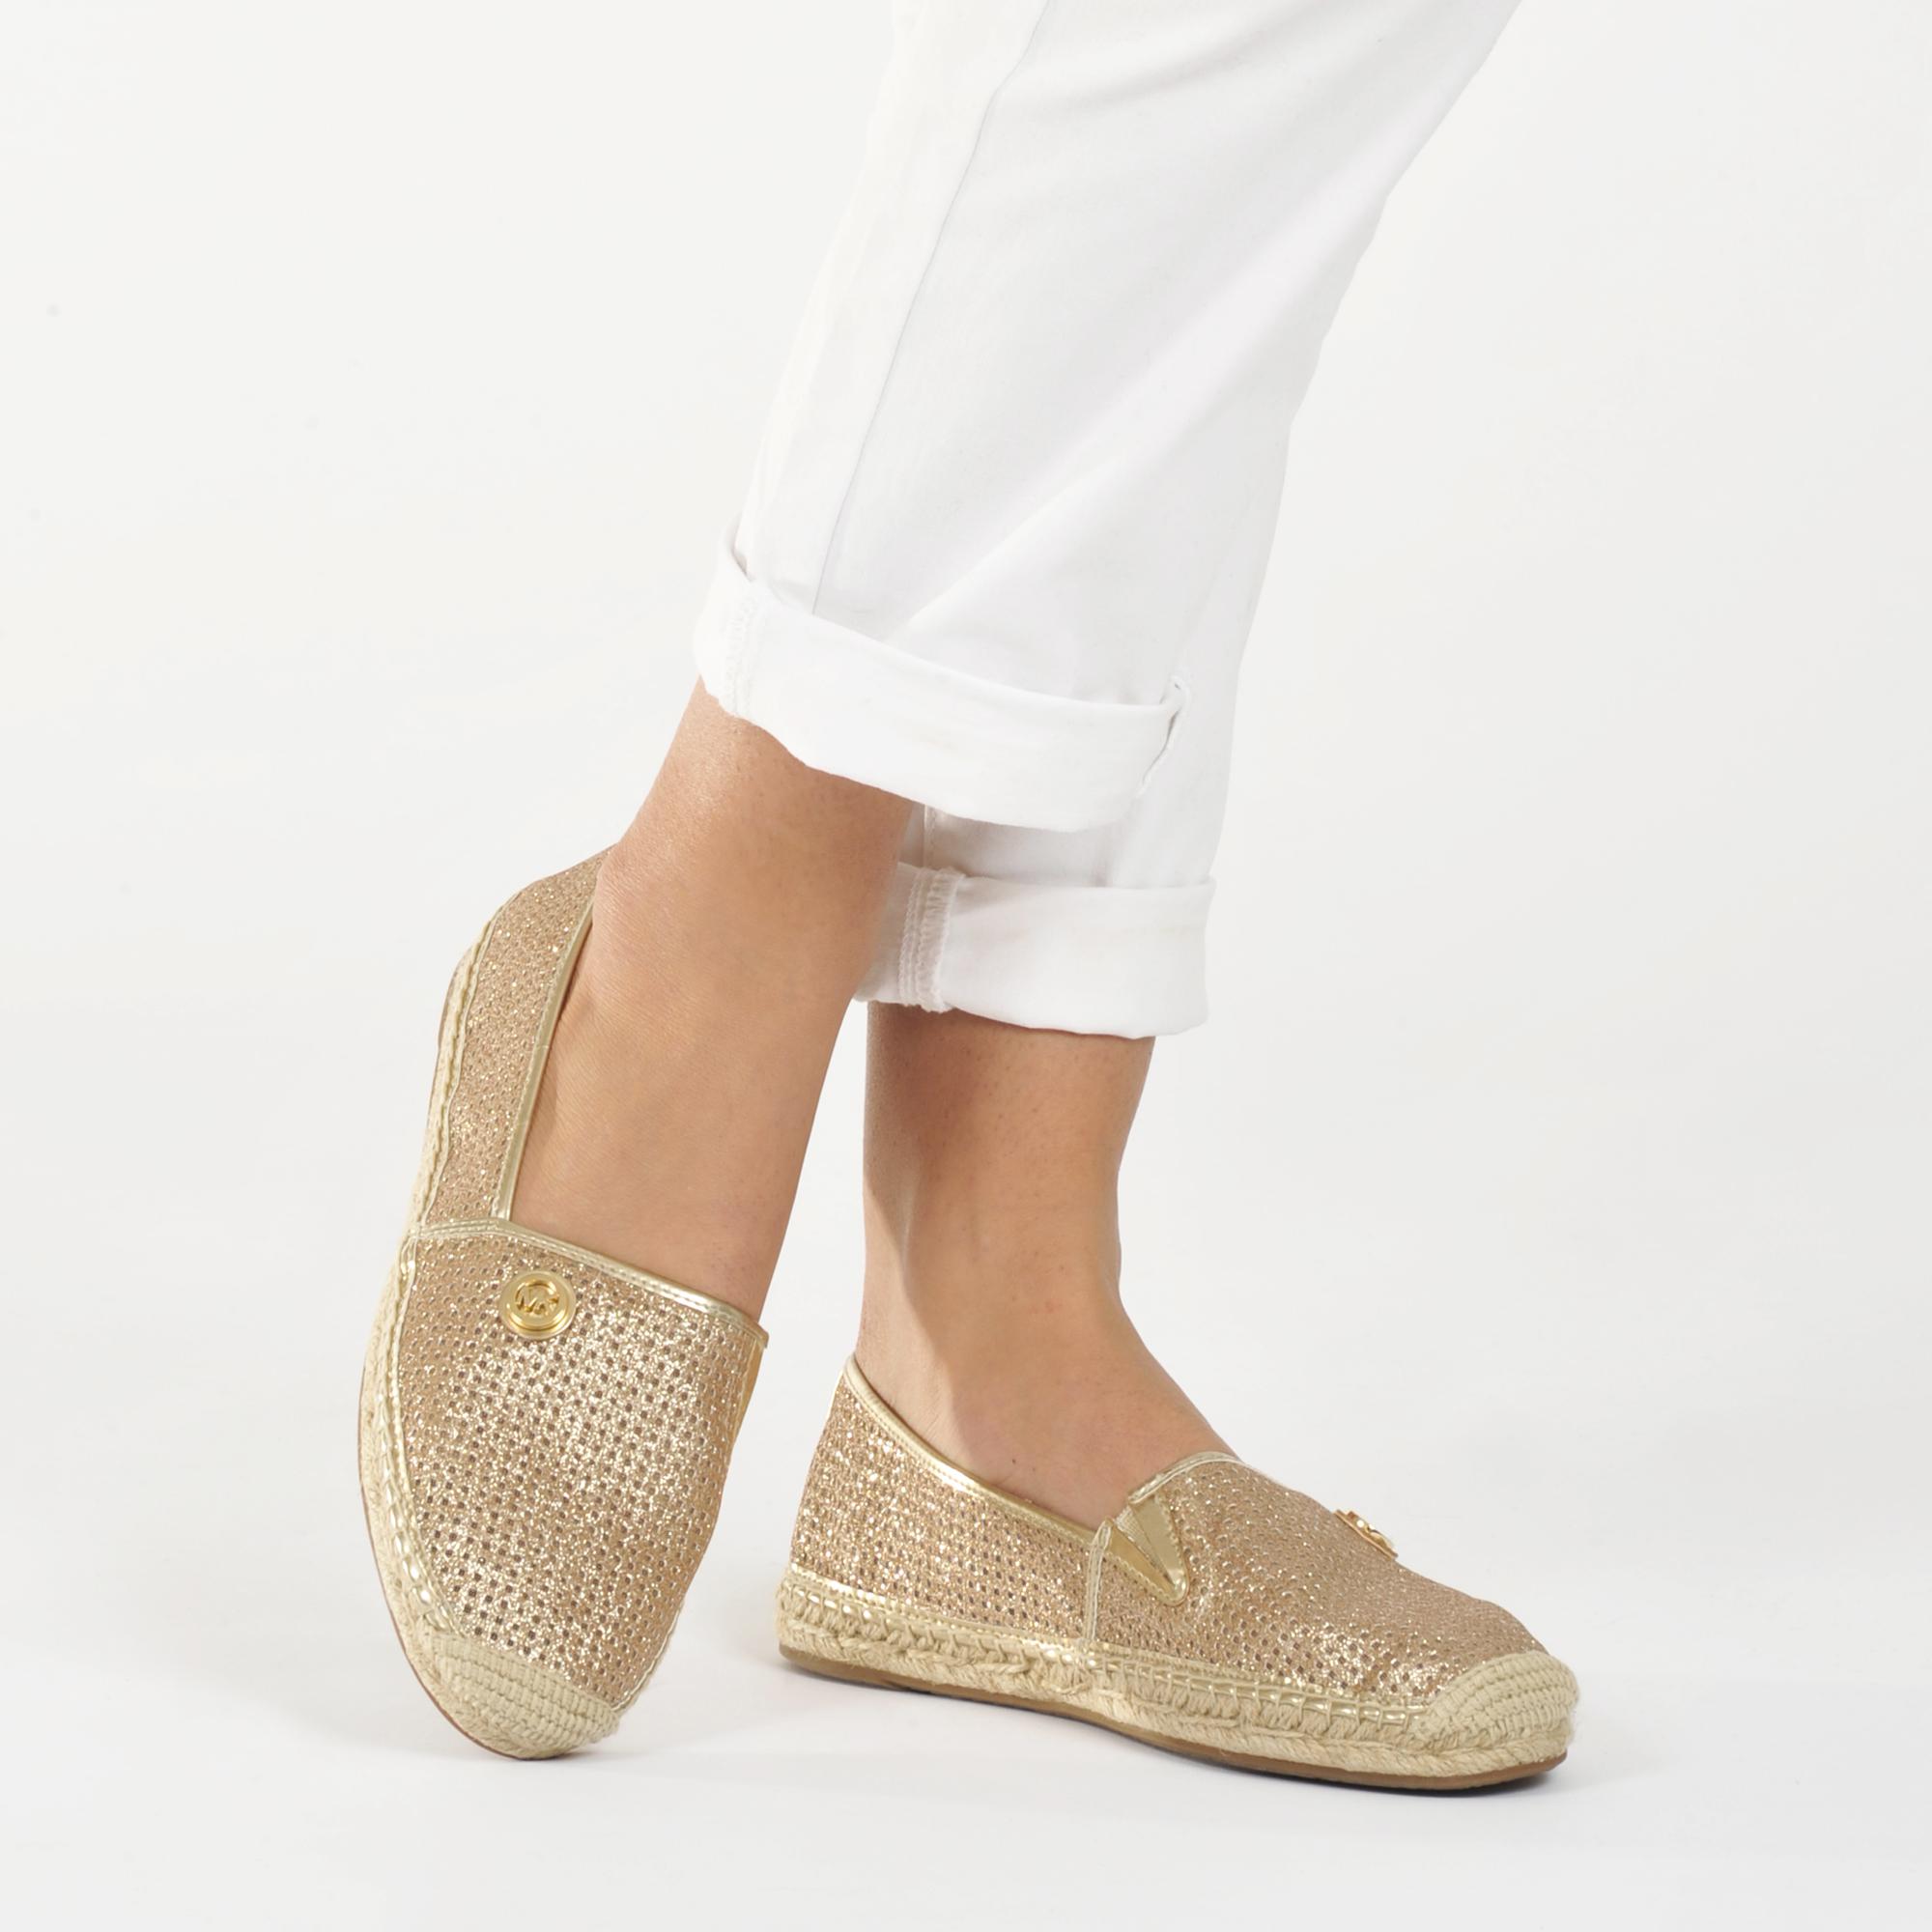 michael kors gold slip on shoes